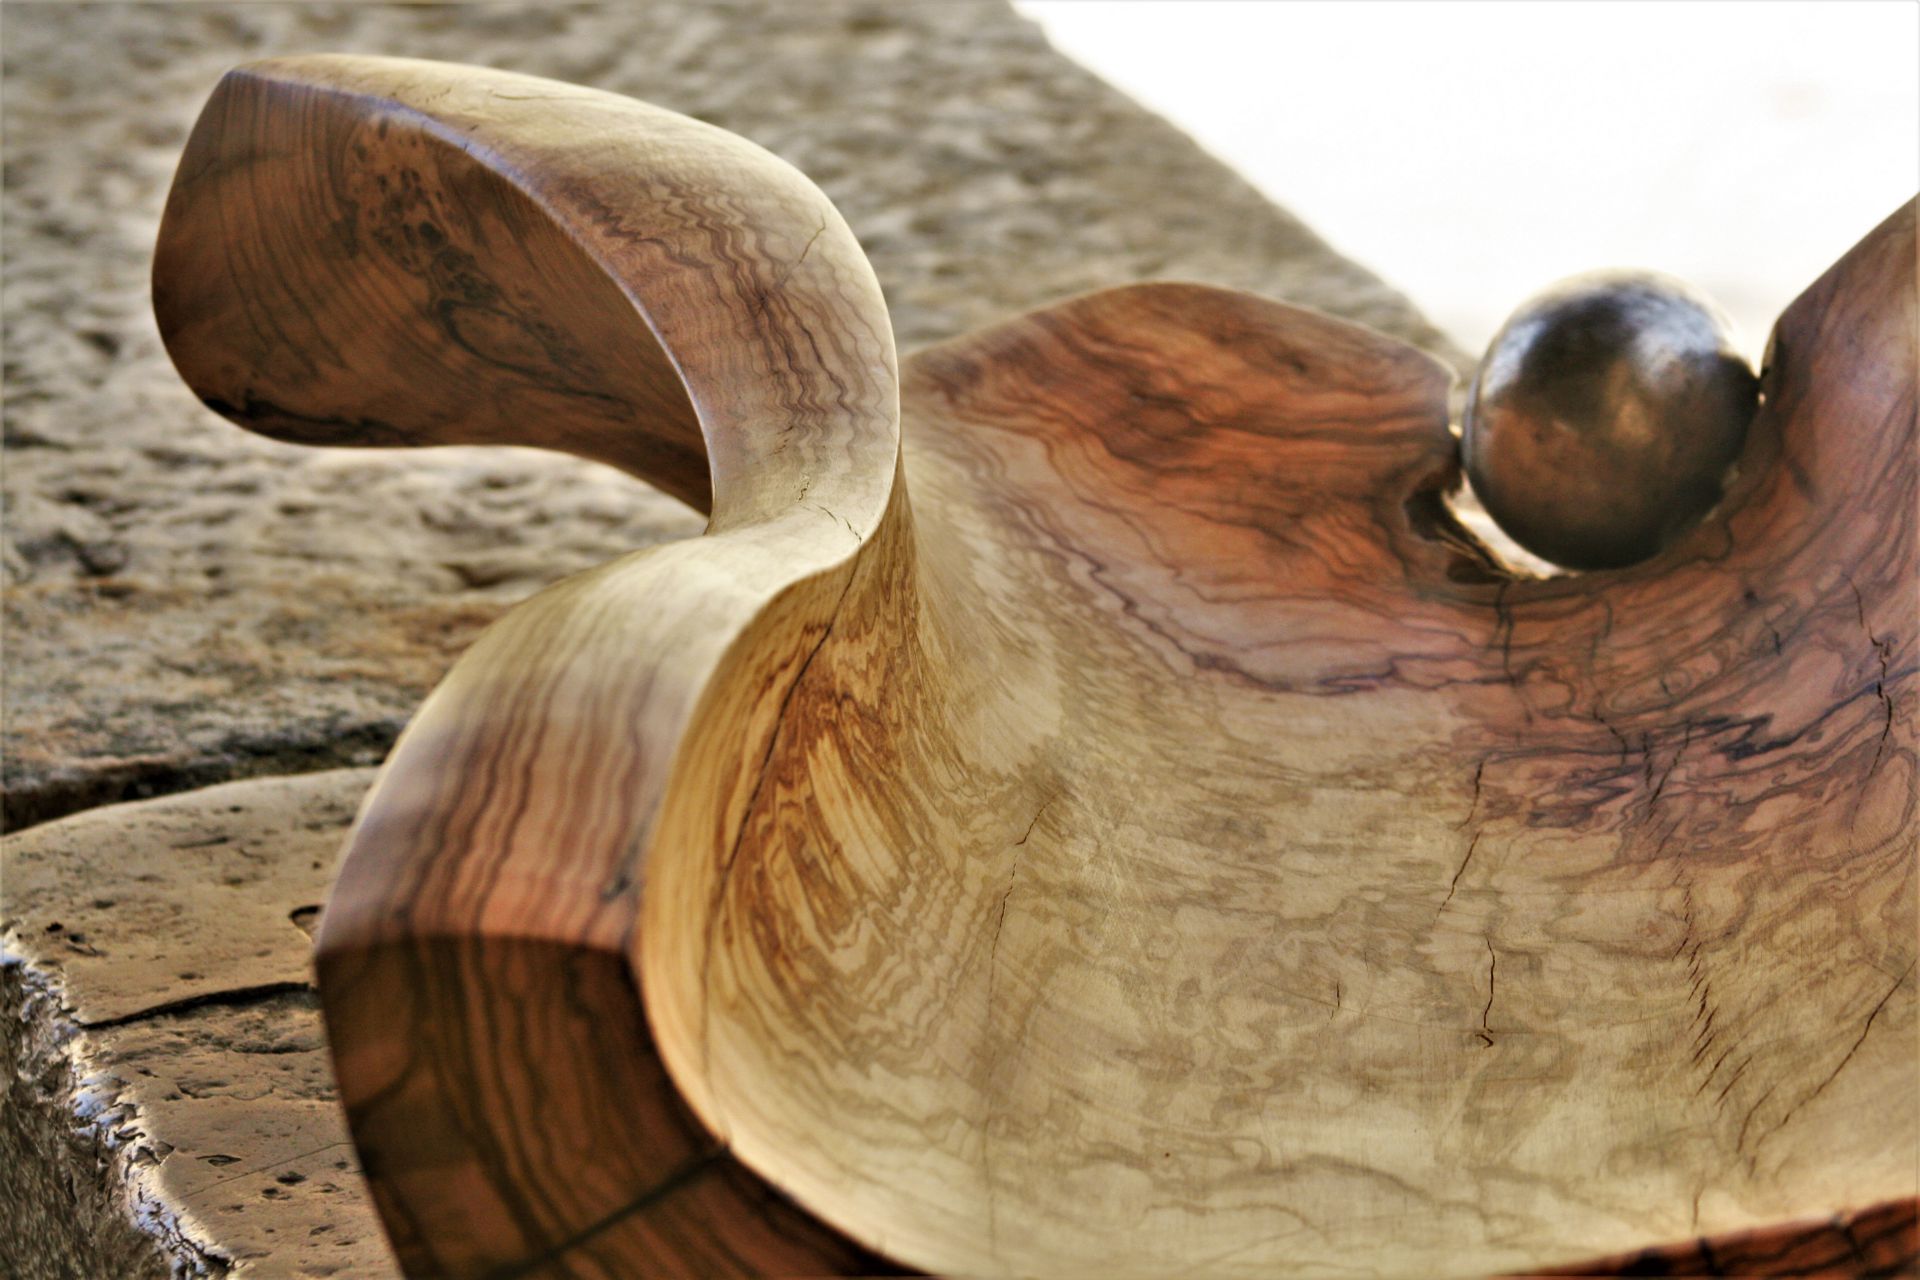 wooden bowls olive wood handmade unique artist design large size original fruit bowl